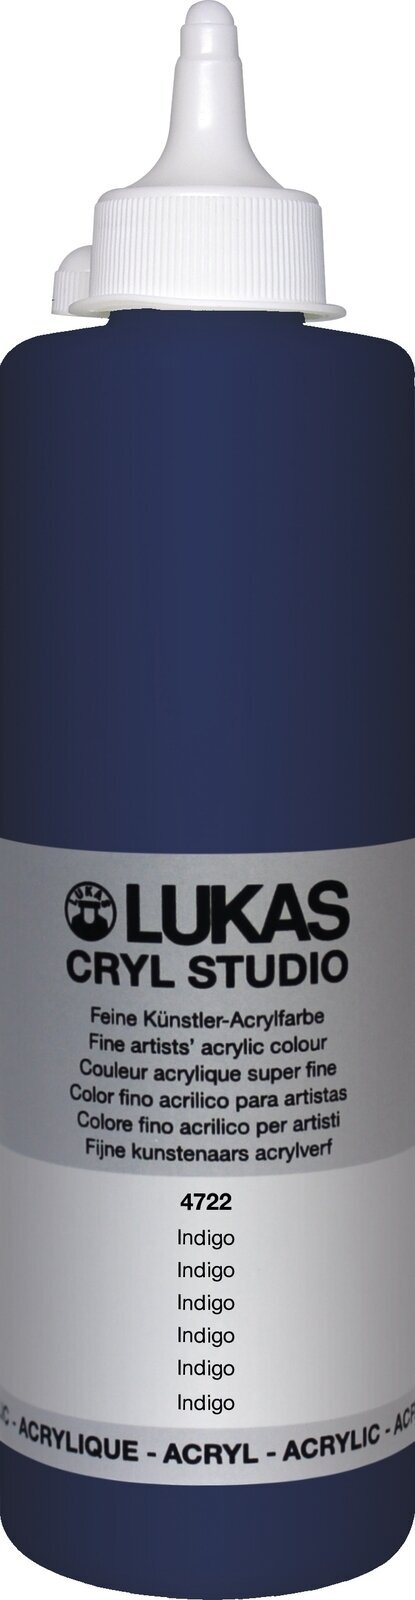 Acrylfarbe Lukas Cryl Studio Acrylfarbe 500 ml Indigo